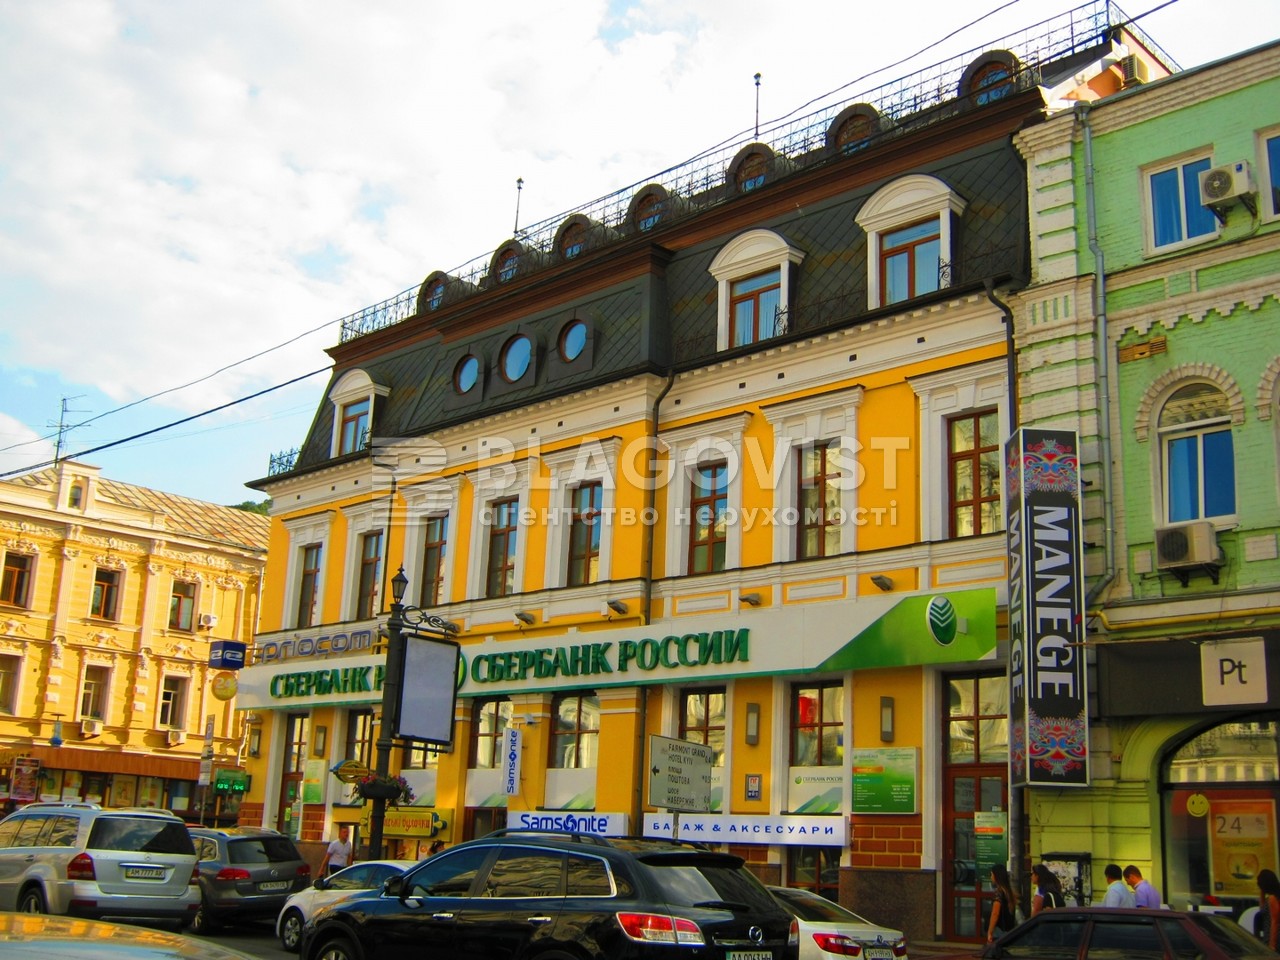  Ресторан, P-17799, Сагайдачного П., Київ - Фото 2